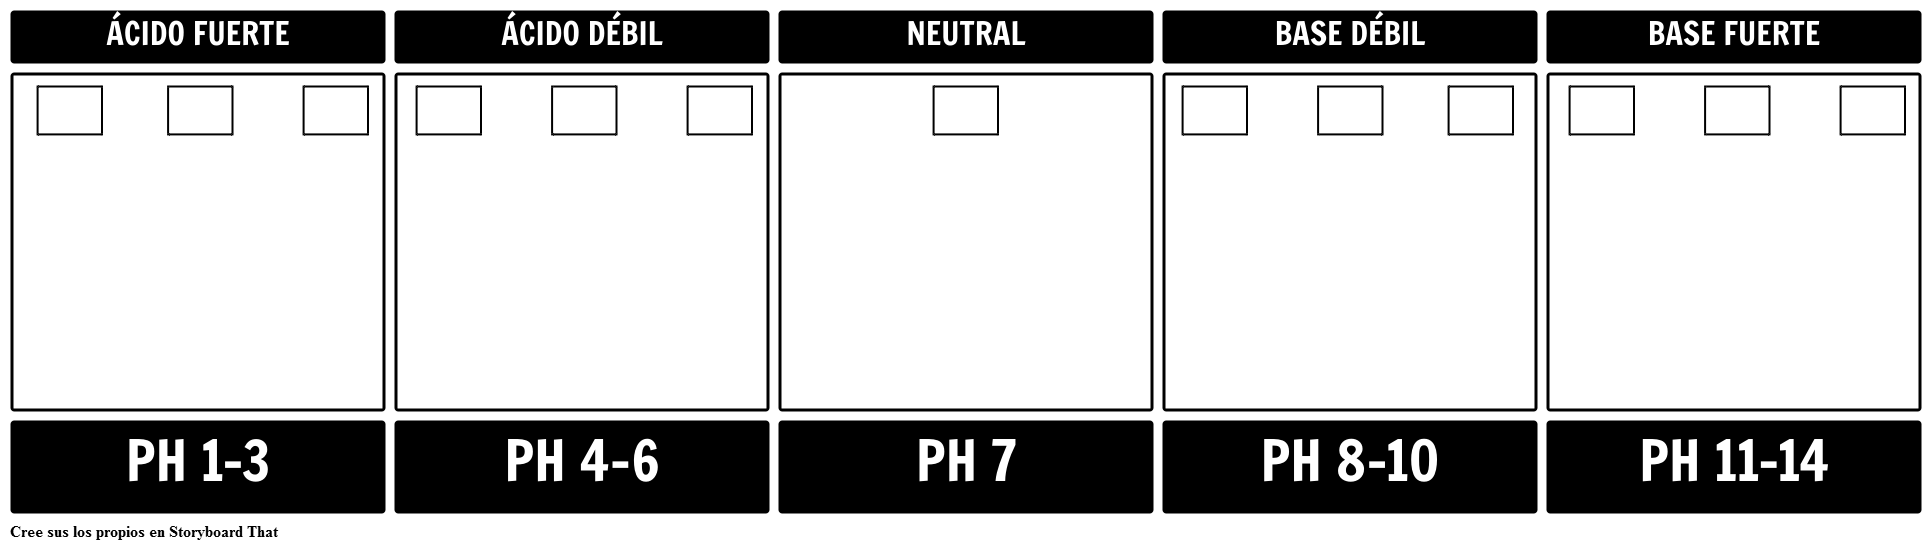 Plantilla de Escala de pH